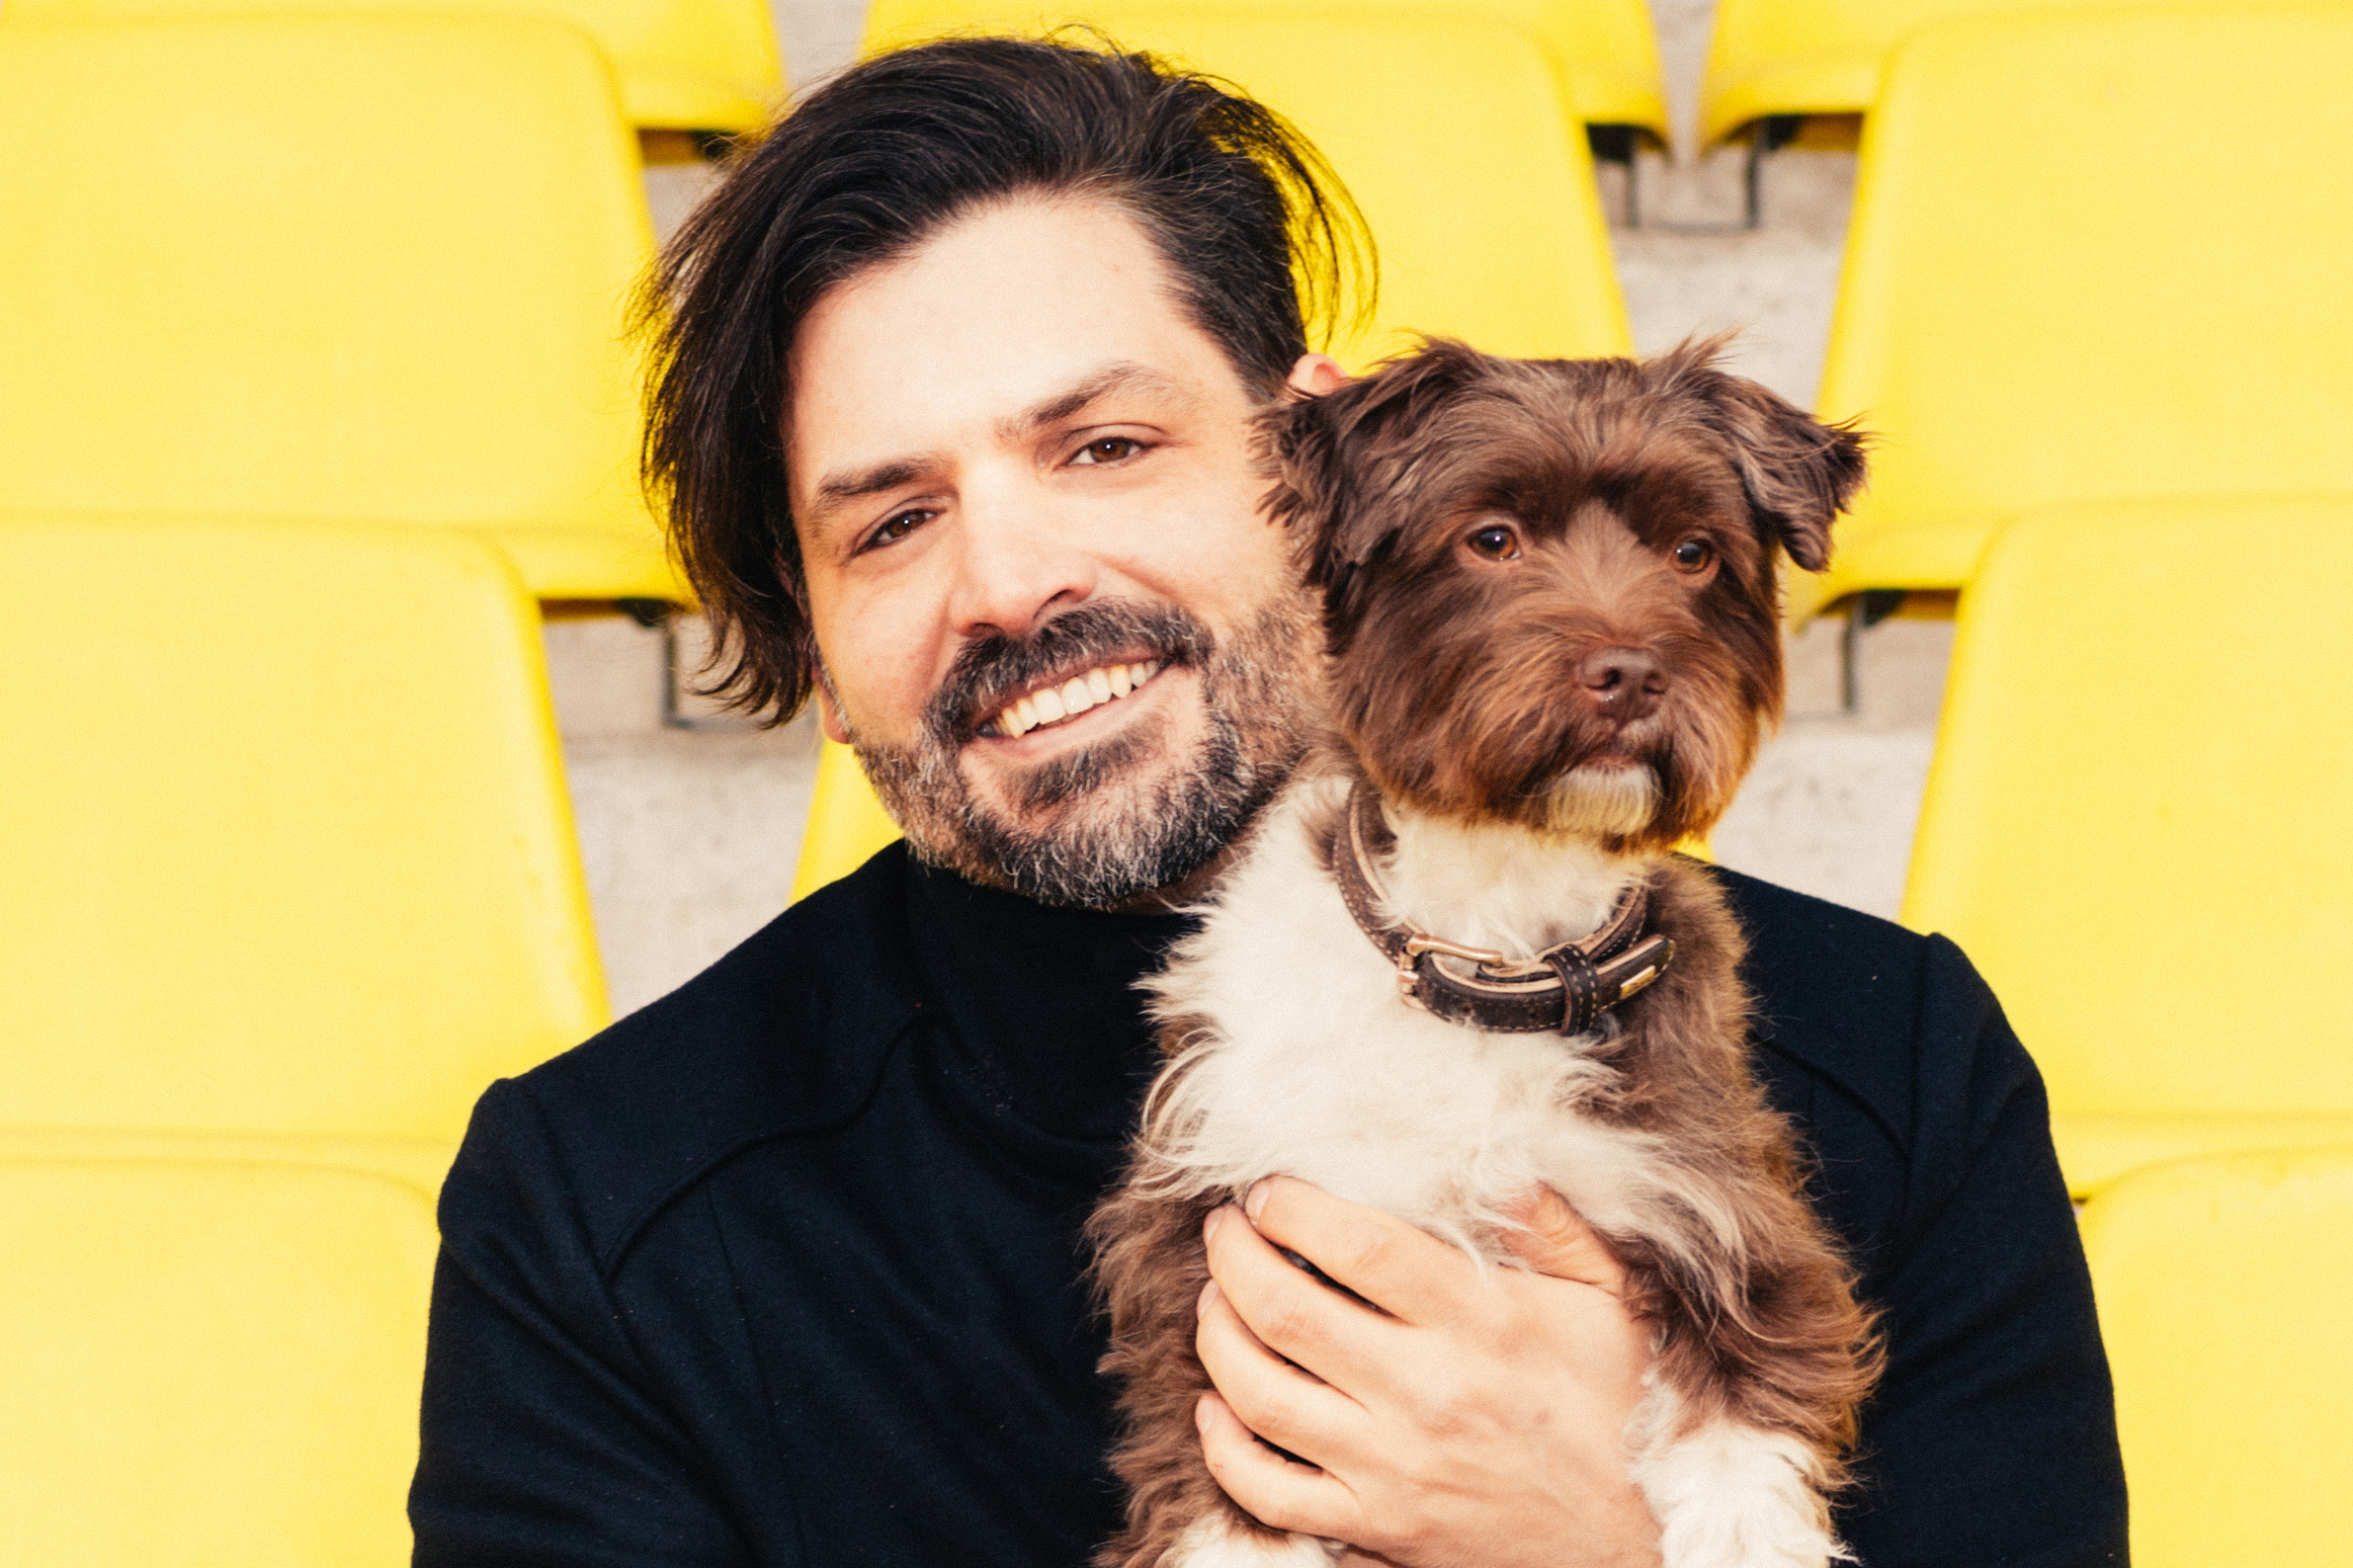 Er und sein Festival brauchen eine Auszeit: Timo Kumpf, Organisator des Maifeld Derby, mit Hund